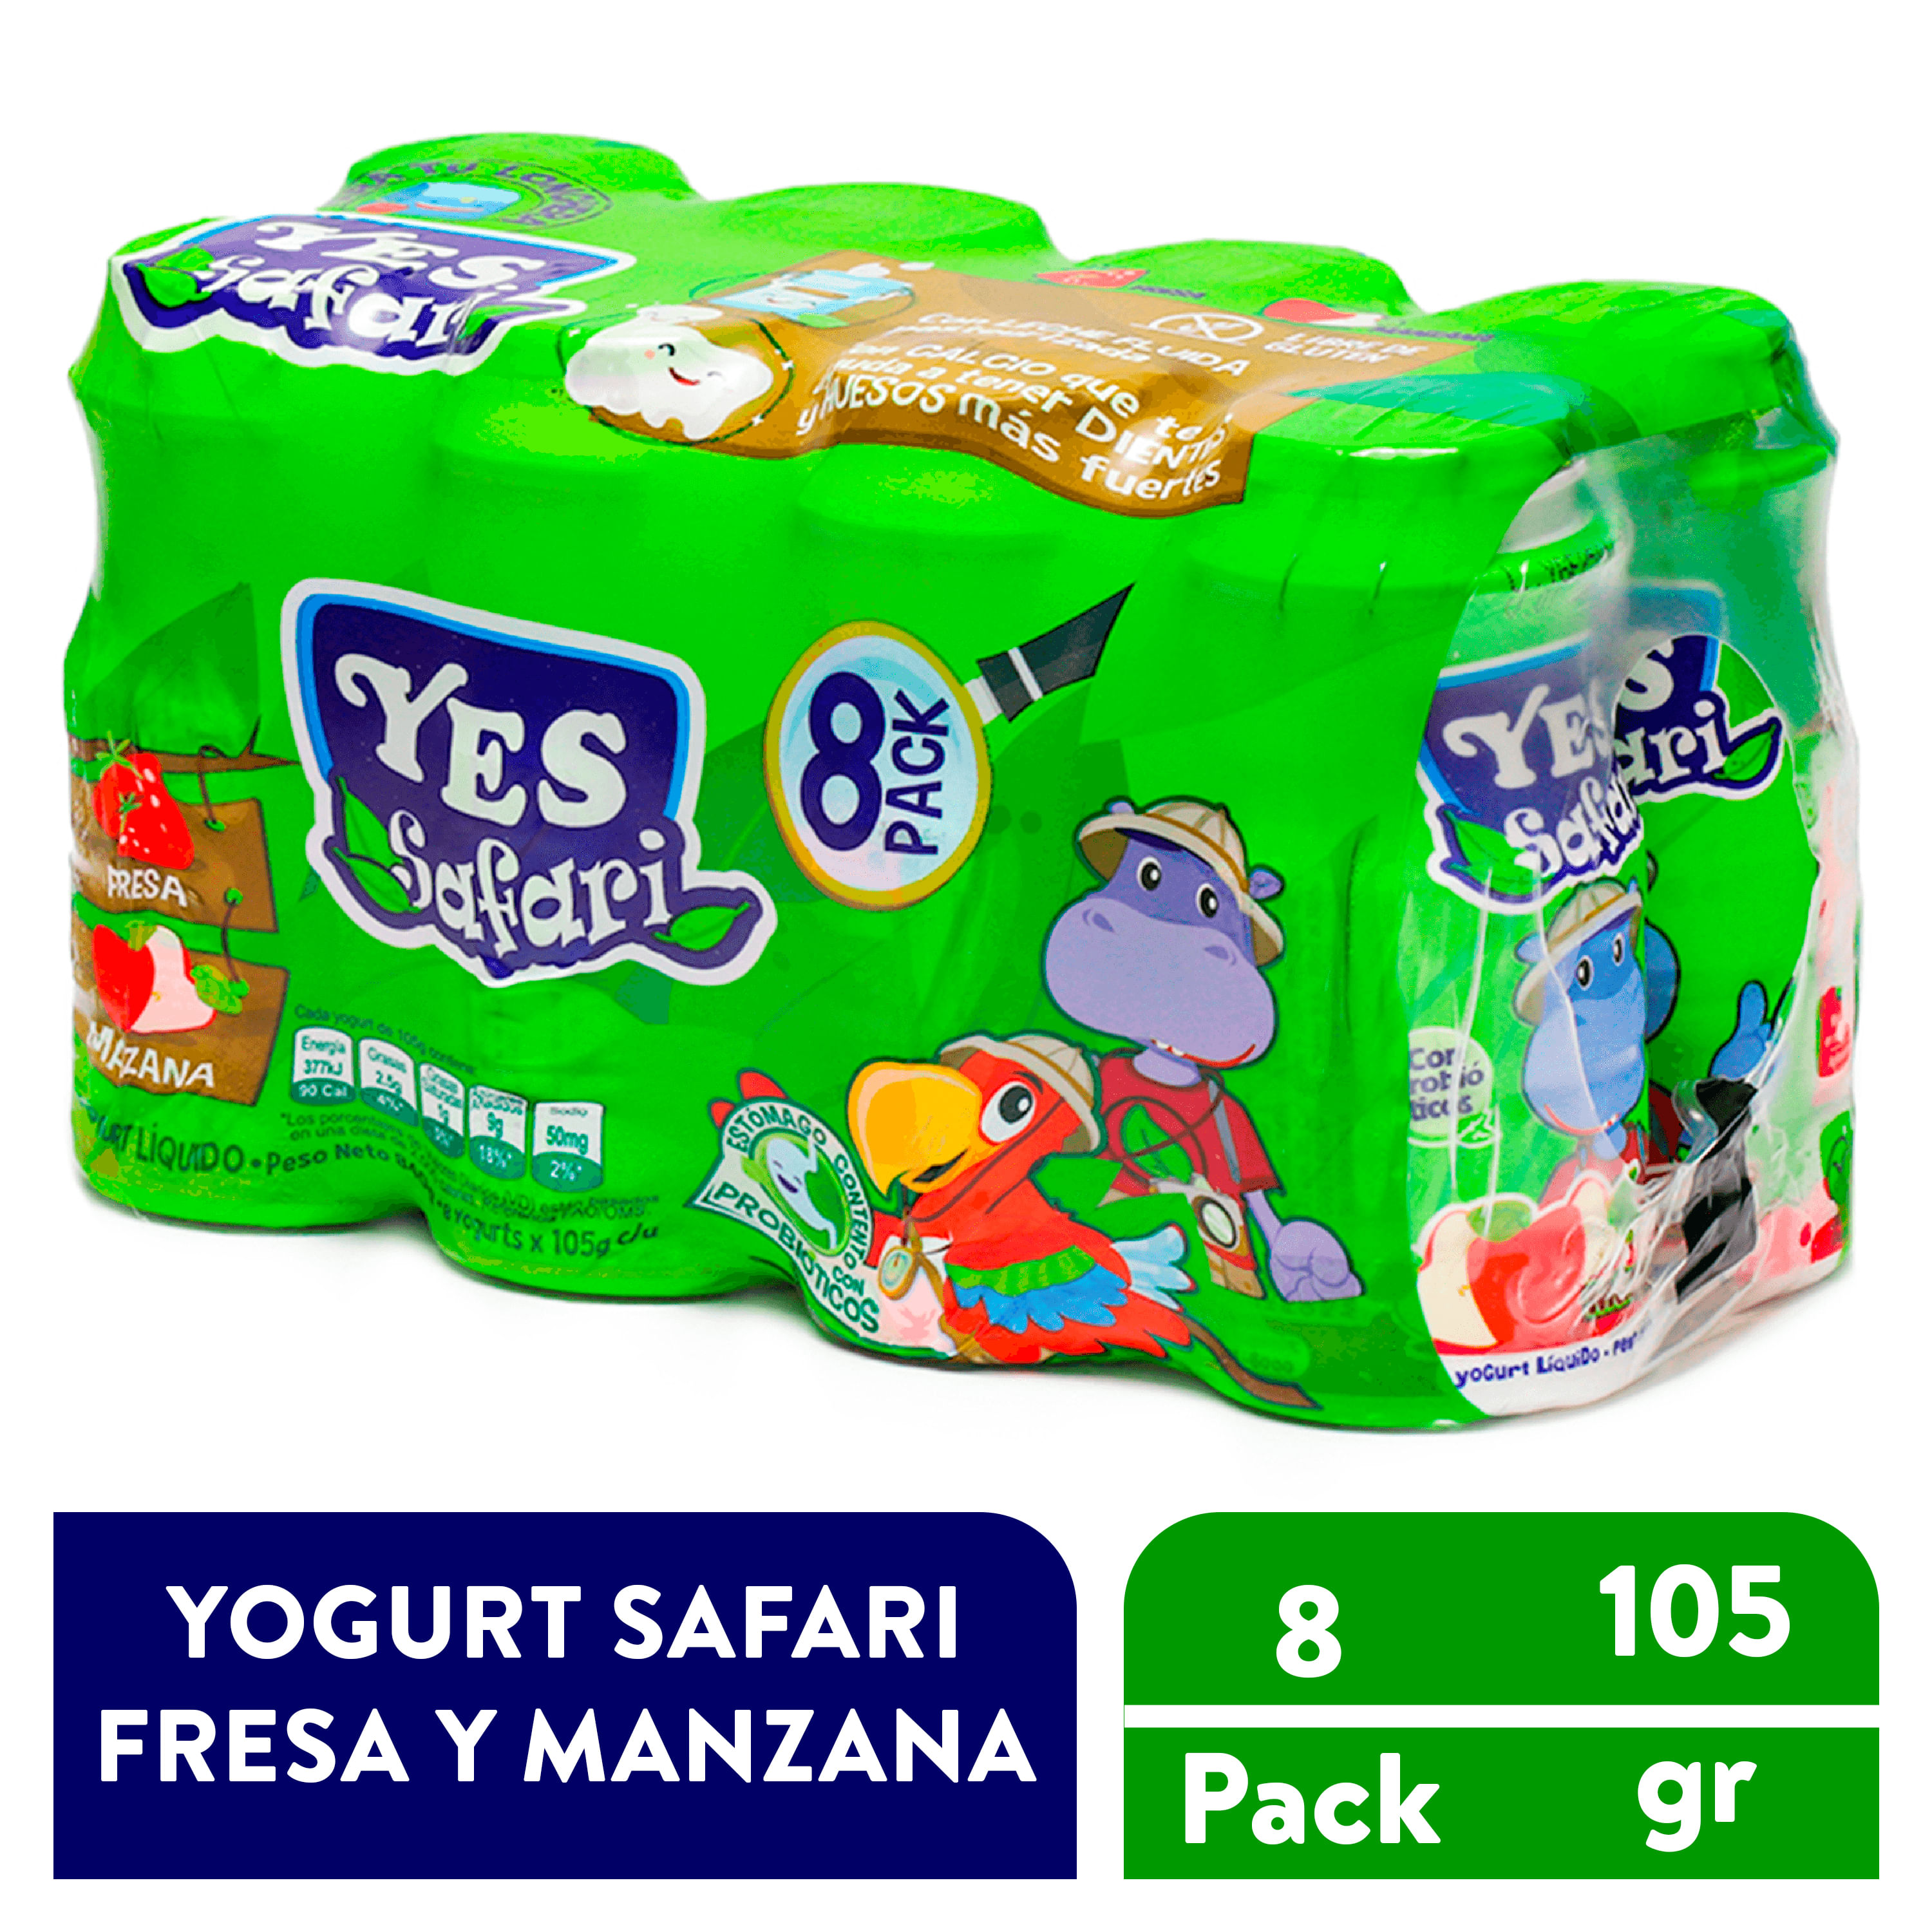 Simeo 8 Botes Yogurt 20w - Yva640 con Ofertas en Carrefour